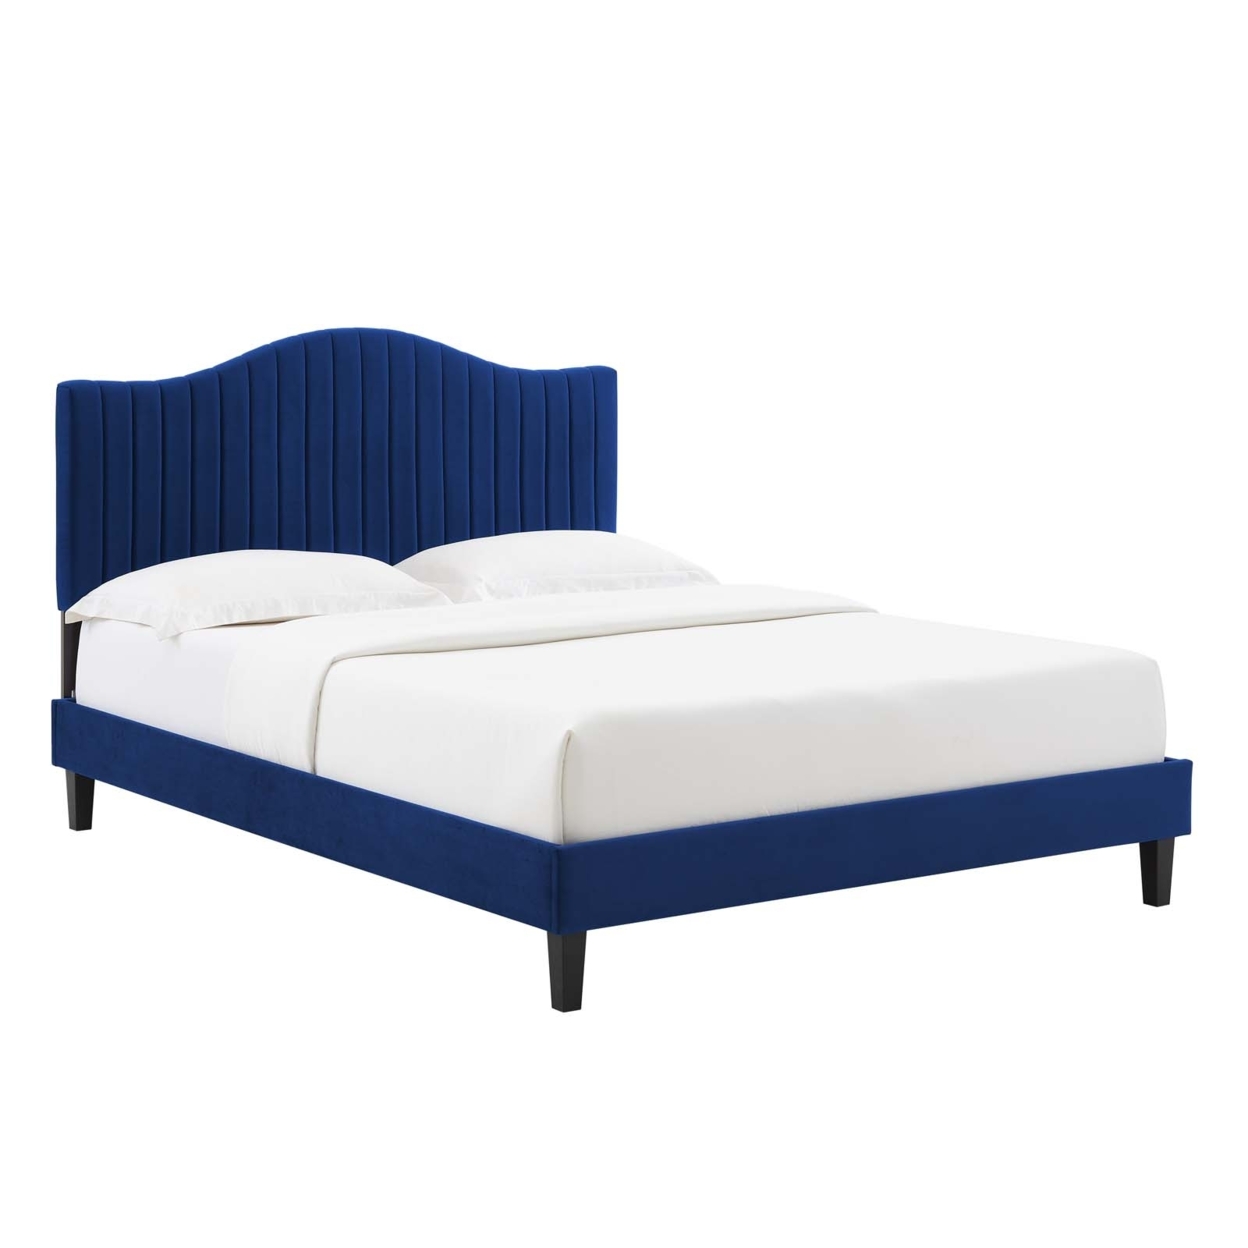 Full Size Platform Bed, Navy Blue Velvet, Camelback Design Headboard